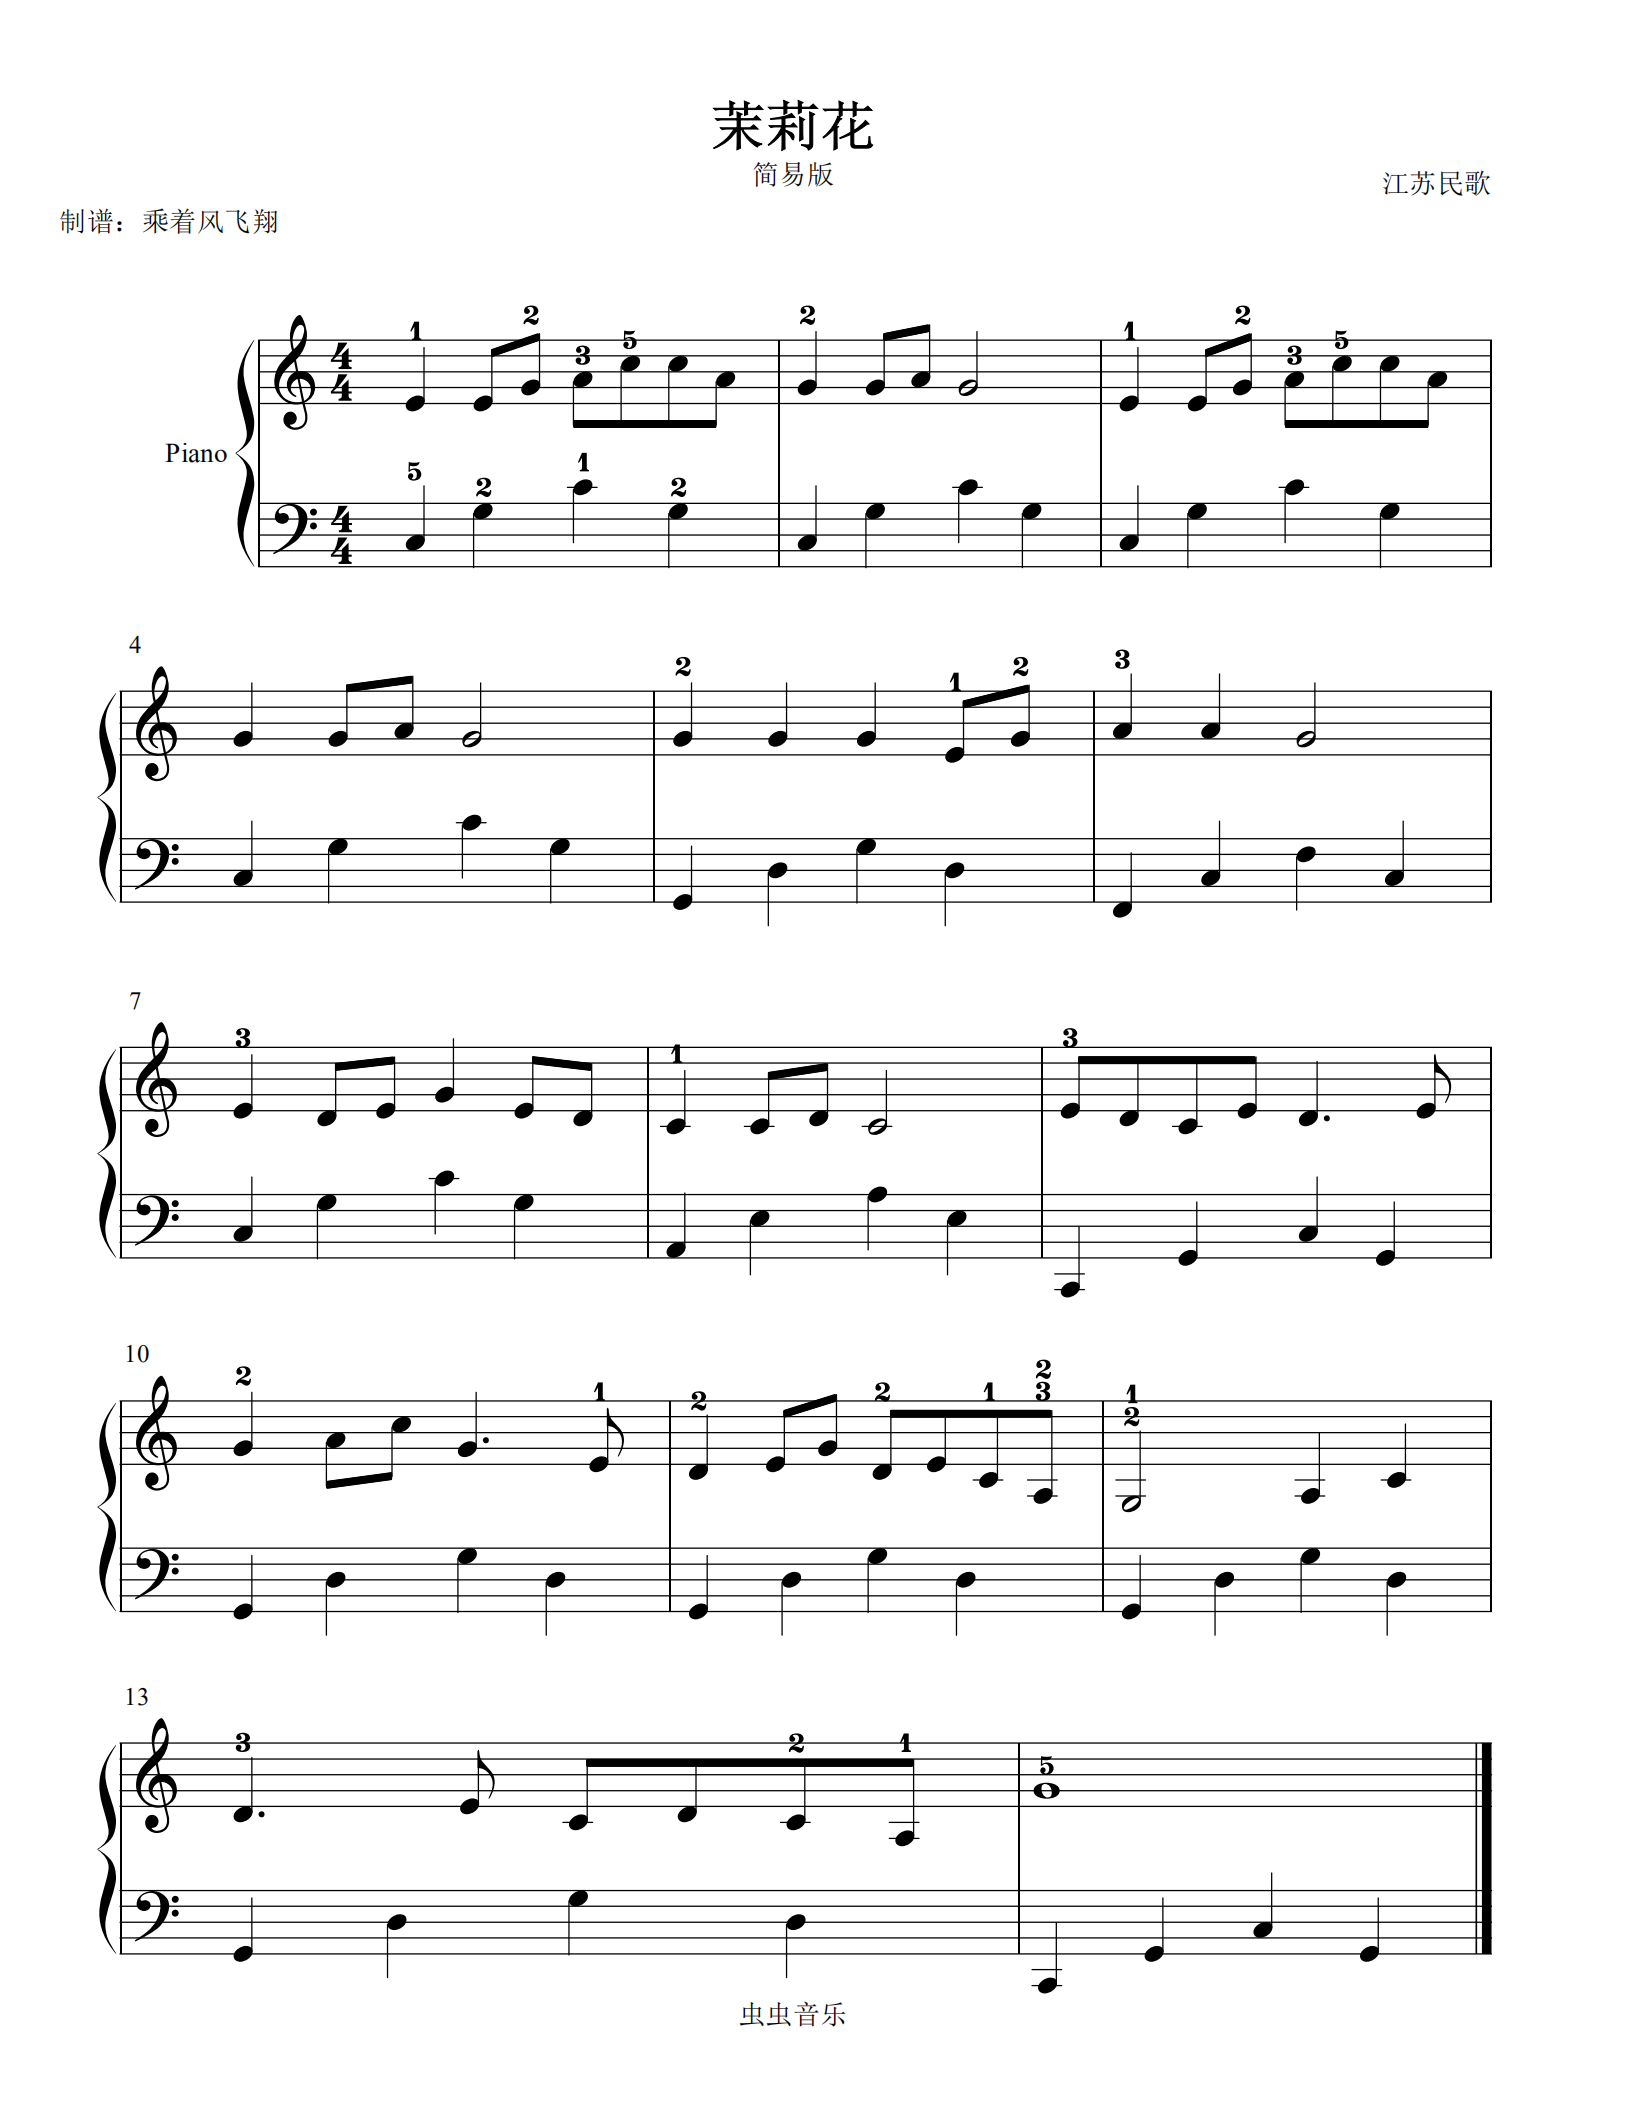 茉莉花--江苏民歌--大音符版钢琴谱,茉莉花--江苏民歌--大音符版c调